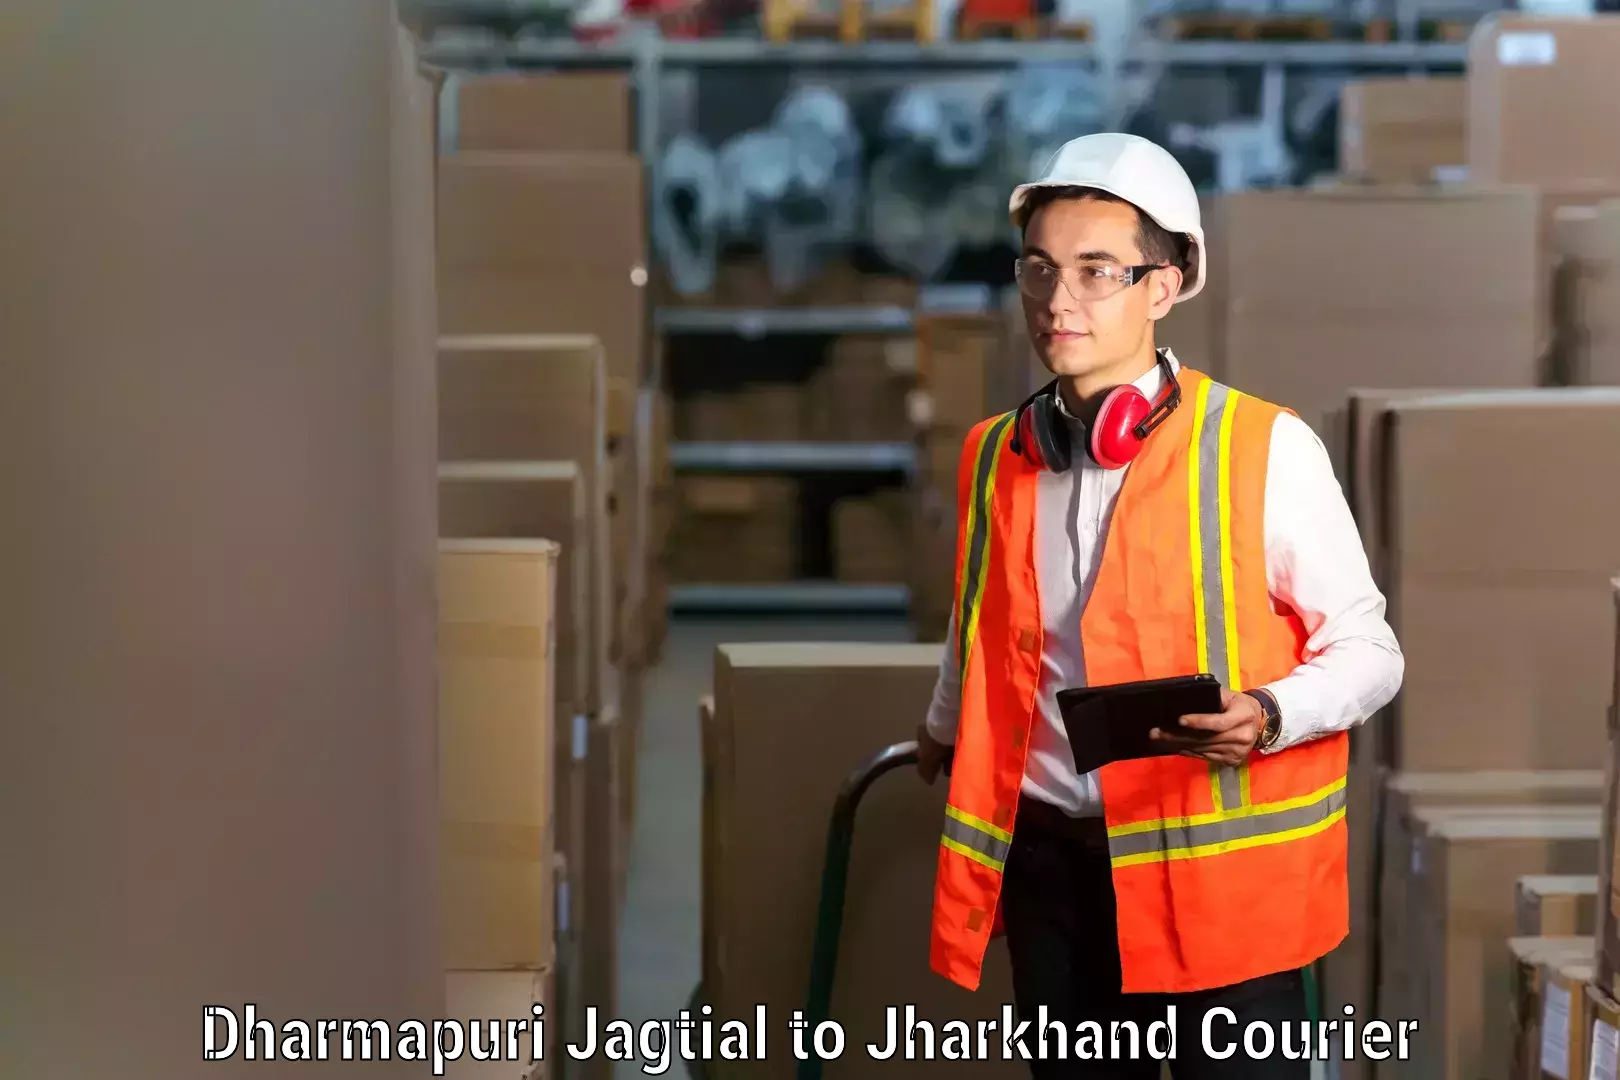 High-quality moving services Dharmapuri Jagtial to Ghatshila